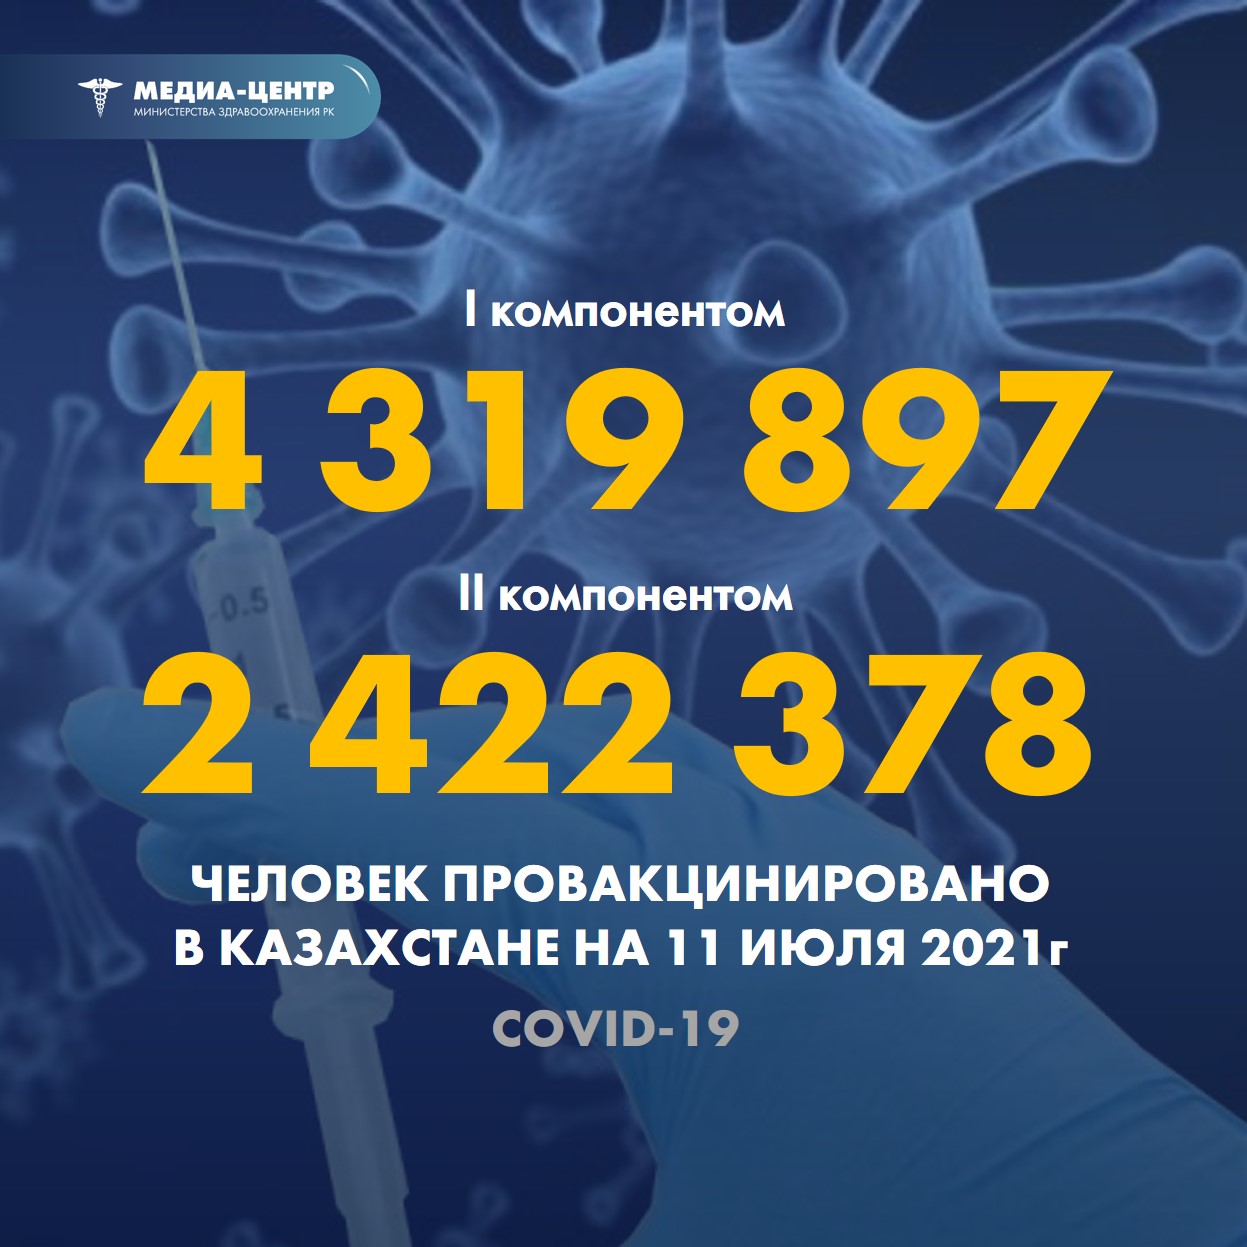 Информация о проведении вакцинации населения против КВИ на 11.07.2021 г. в разрезе регионов